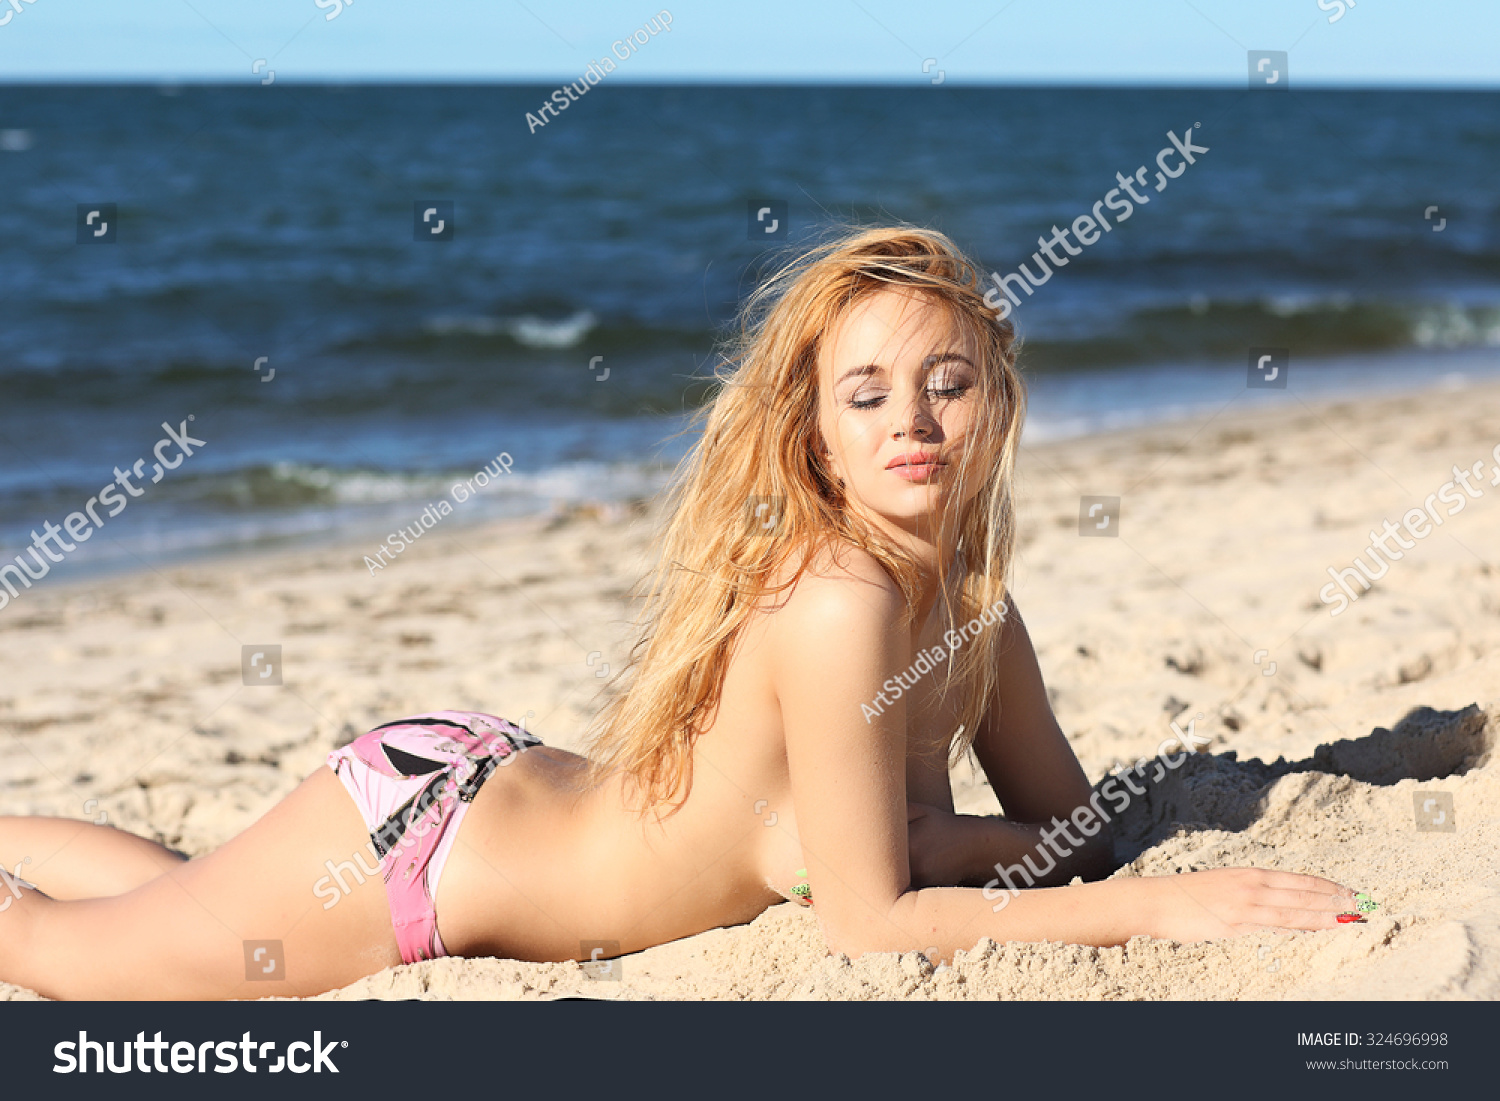 Topless Girl Bikini